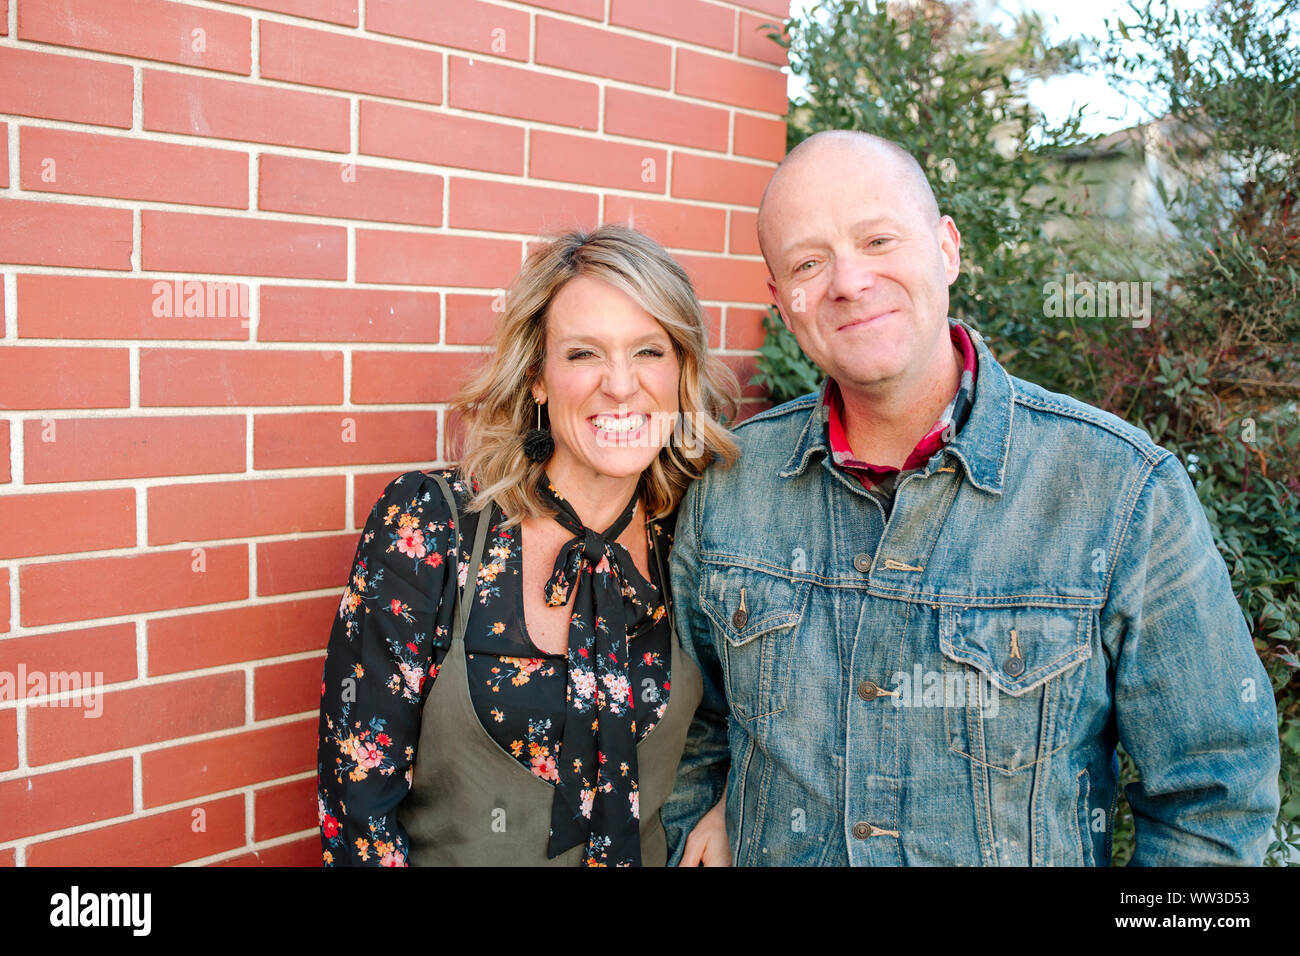 Smiling mari et femme debout en face de mur de brique rouge à l'extérieur Banque D'Images